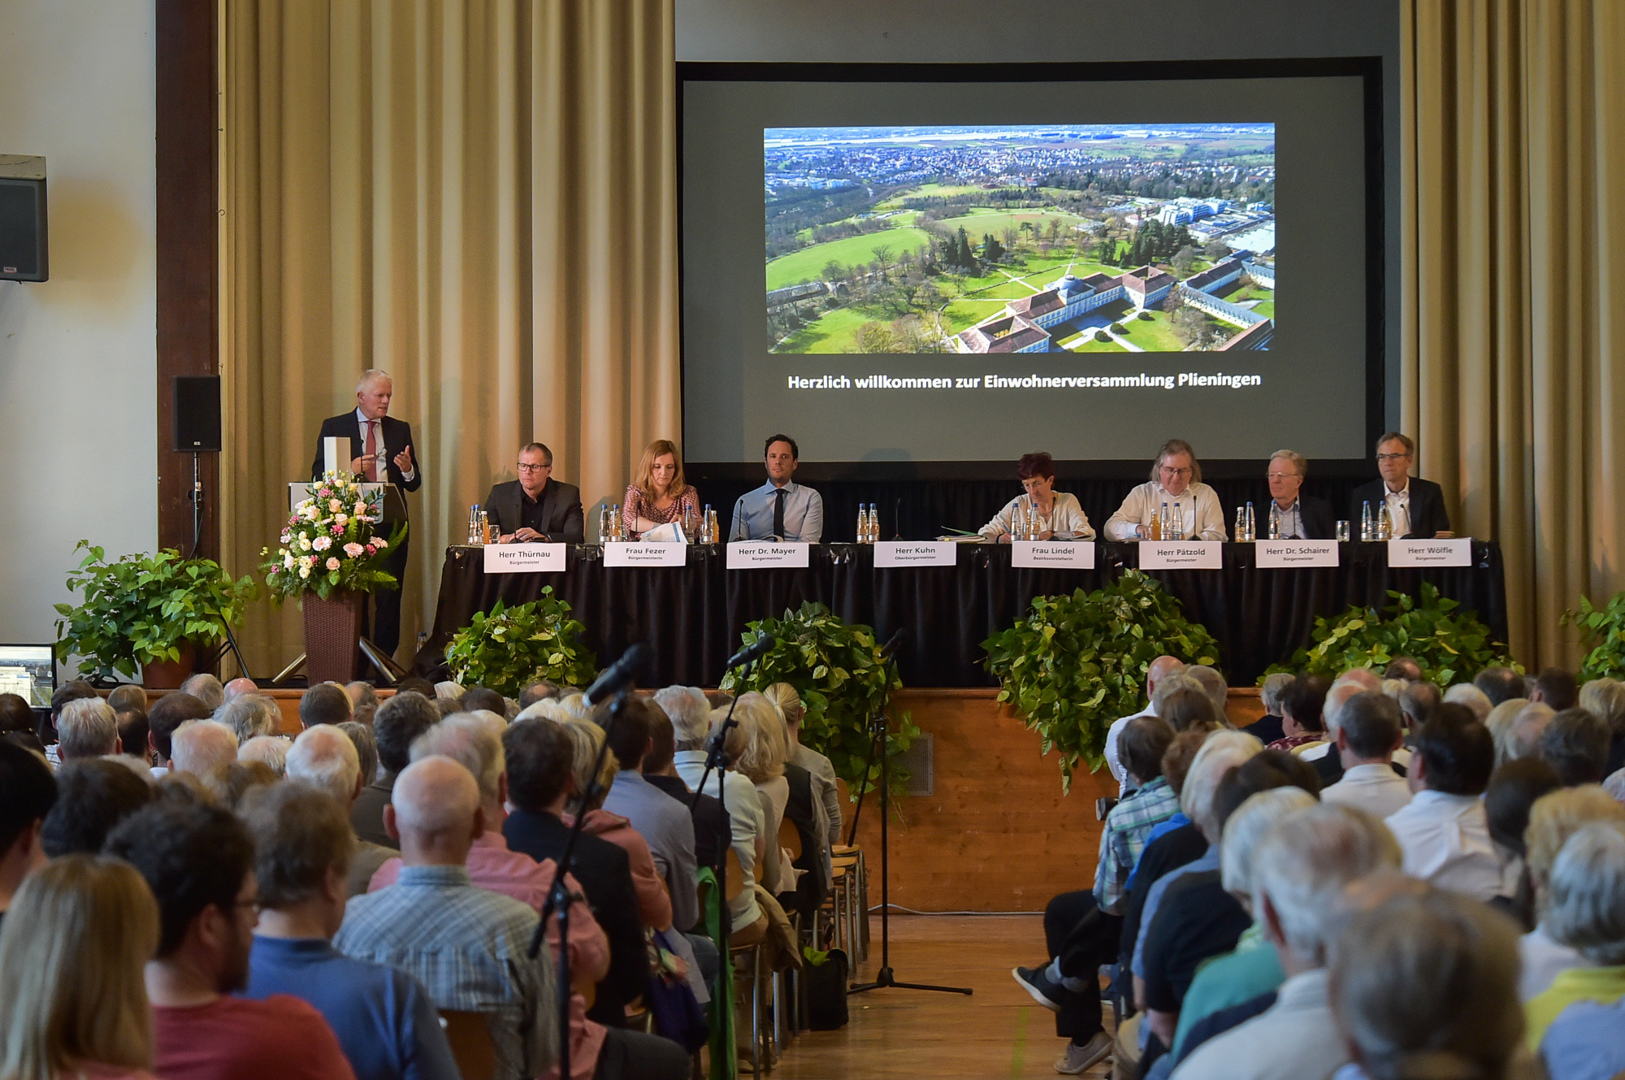 Direkte Antworten erhielten die Besucher der Einwohnerversammlung von OB Kuhn, der anwesenden Bürgermeisterin und den Bürgermeistern. Foto: Ferdinando Iannone